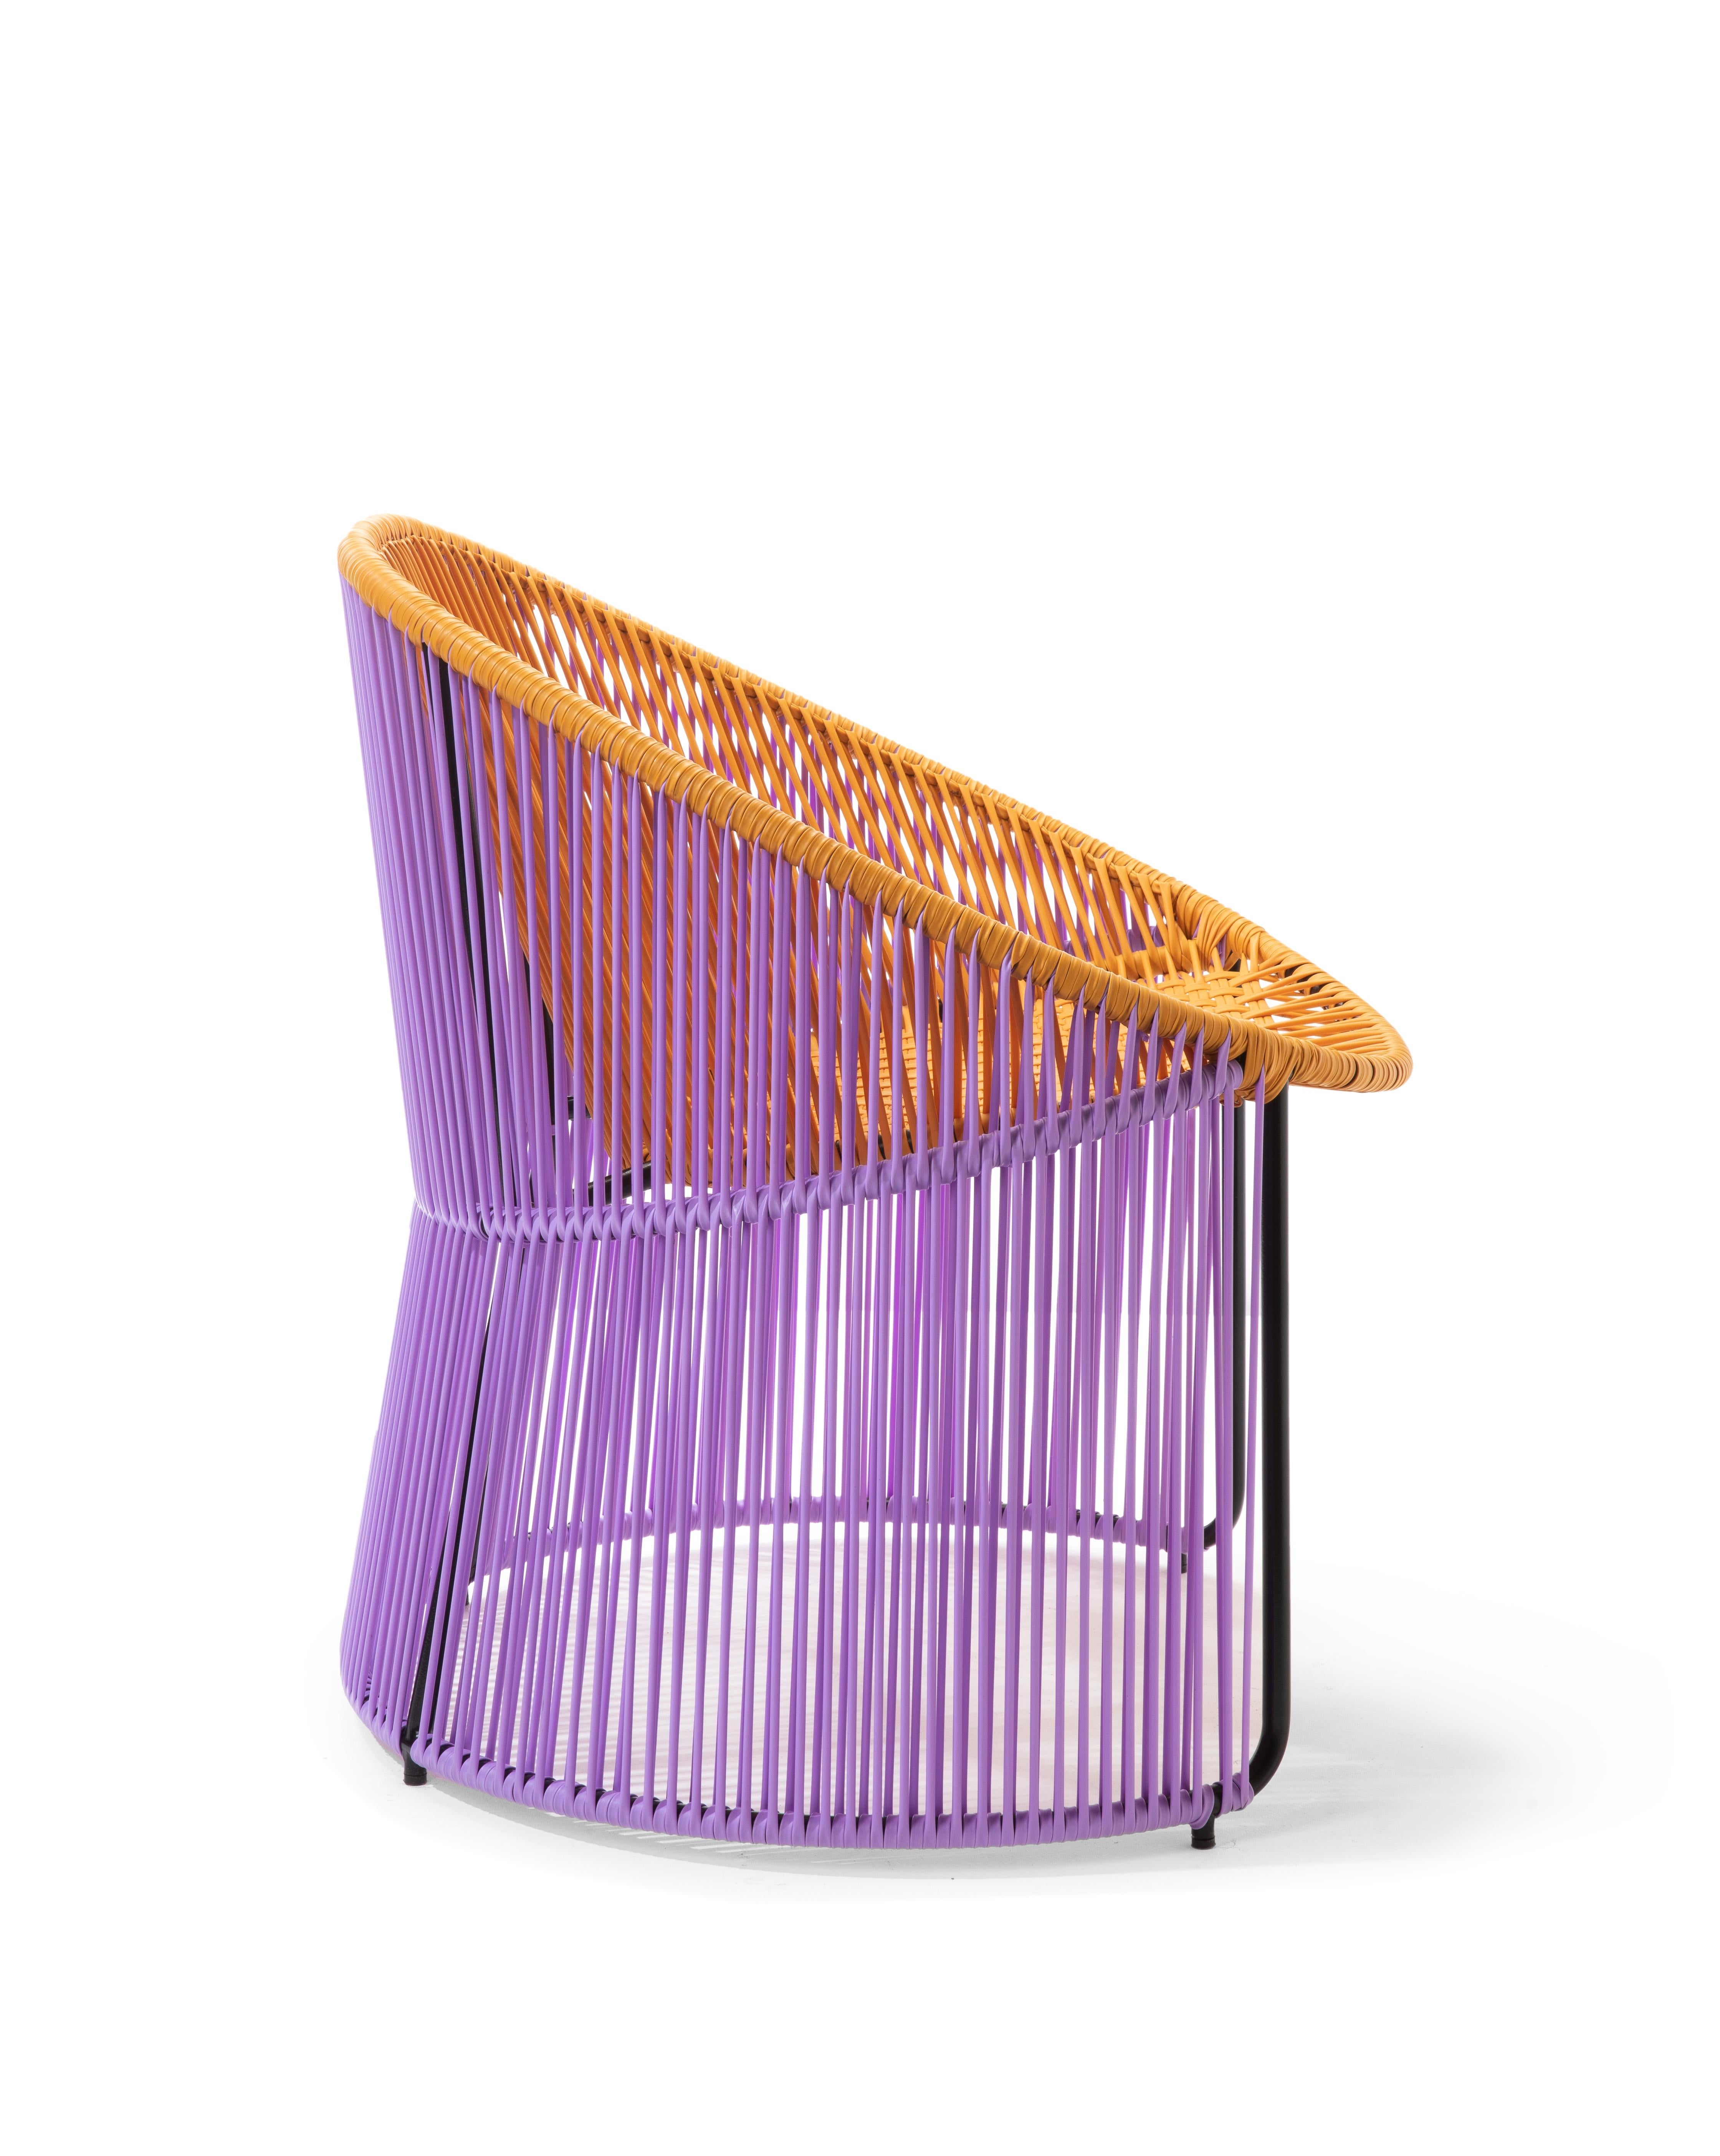 German Honey Cartagenas Lounge Chair by Sebastian Herkner For Sale